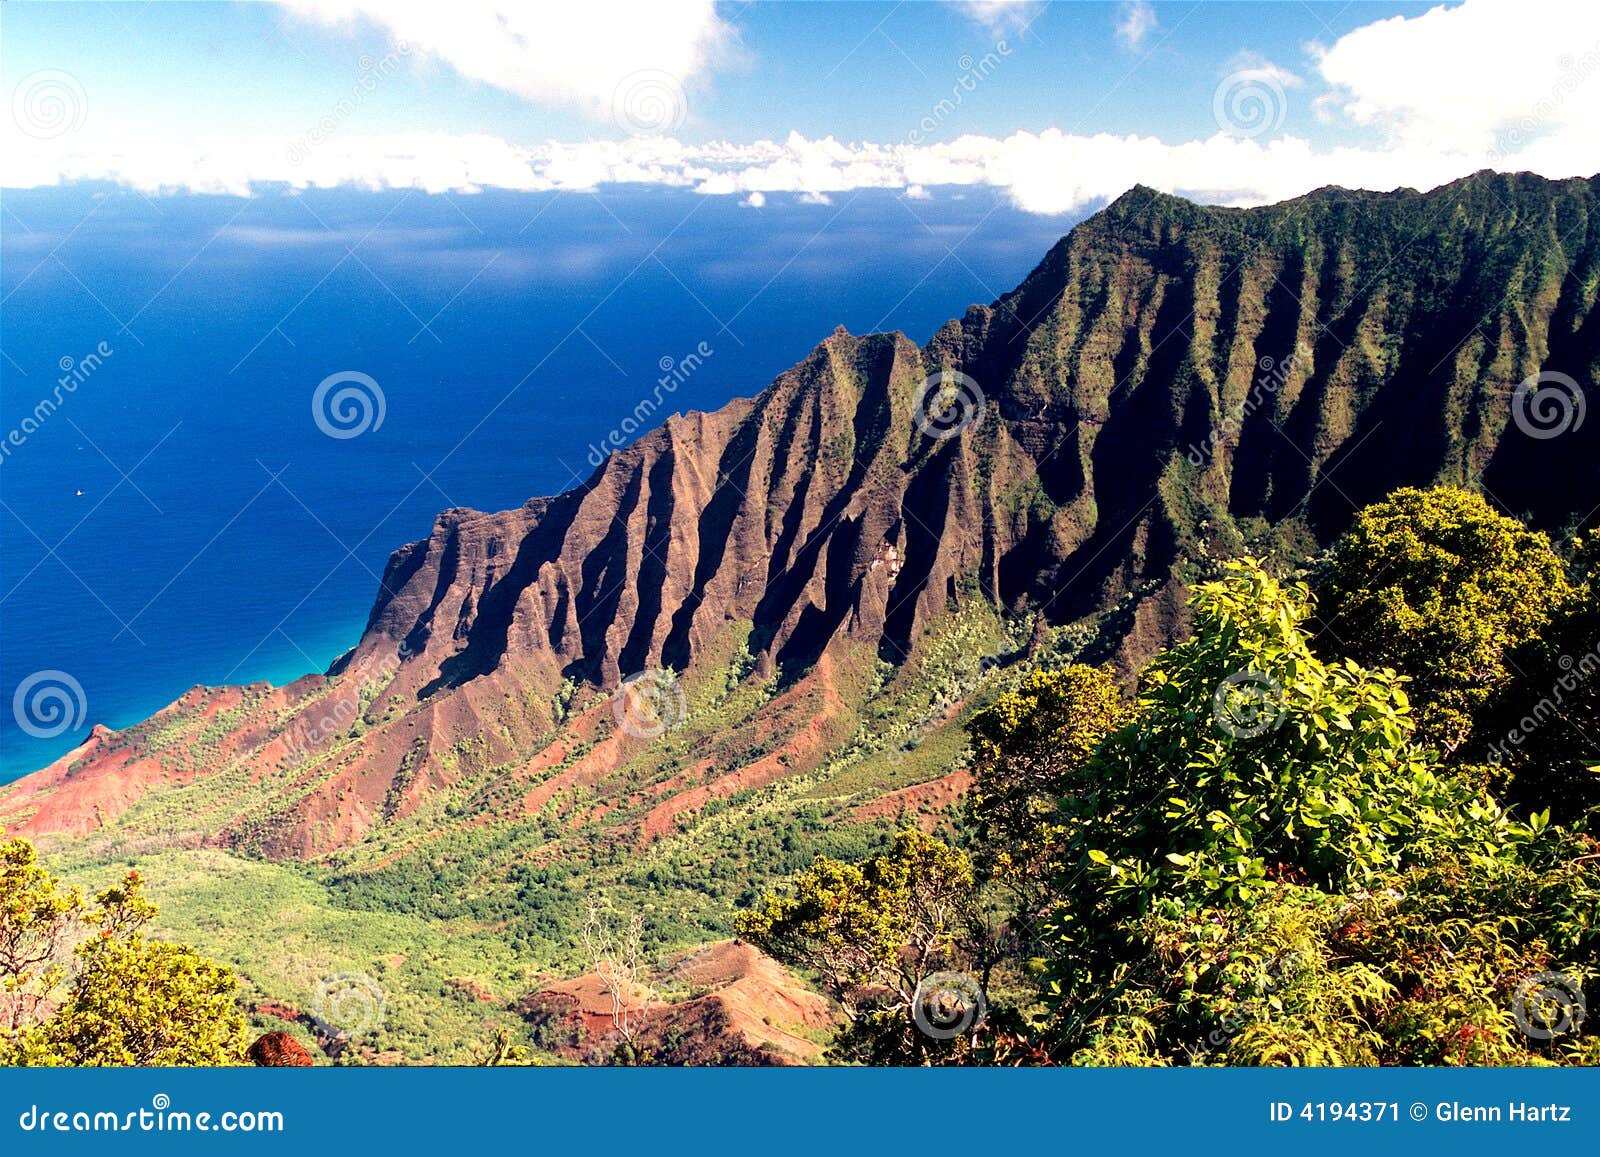 coast of kauai, hawaii